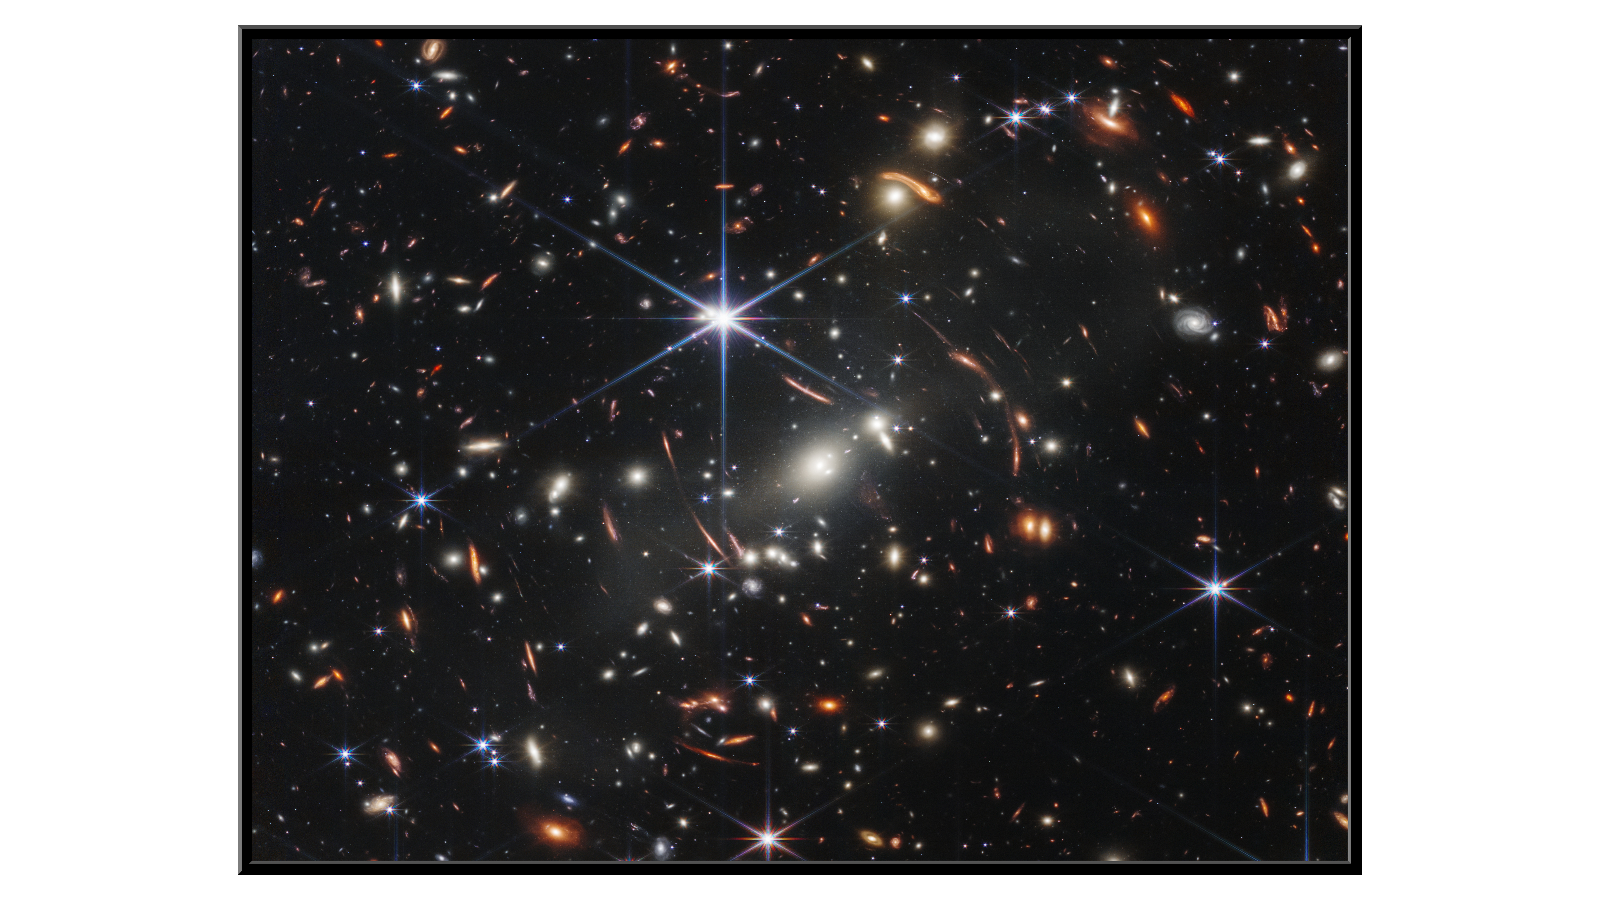 Najostrzejsze zdjęcie wszechświata - SMACS 0723